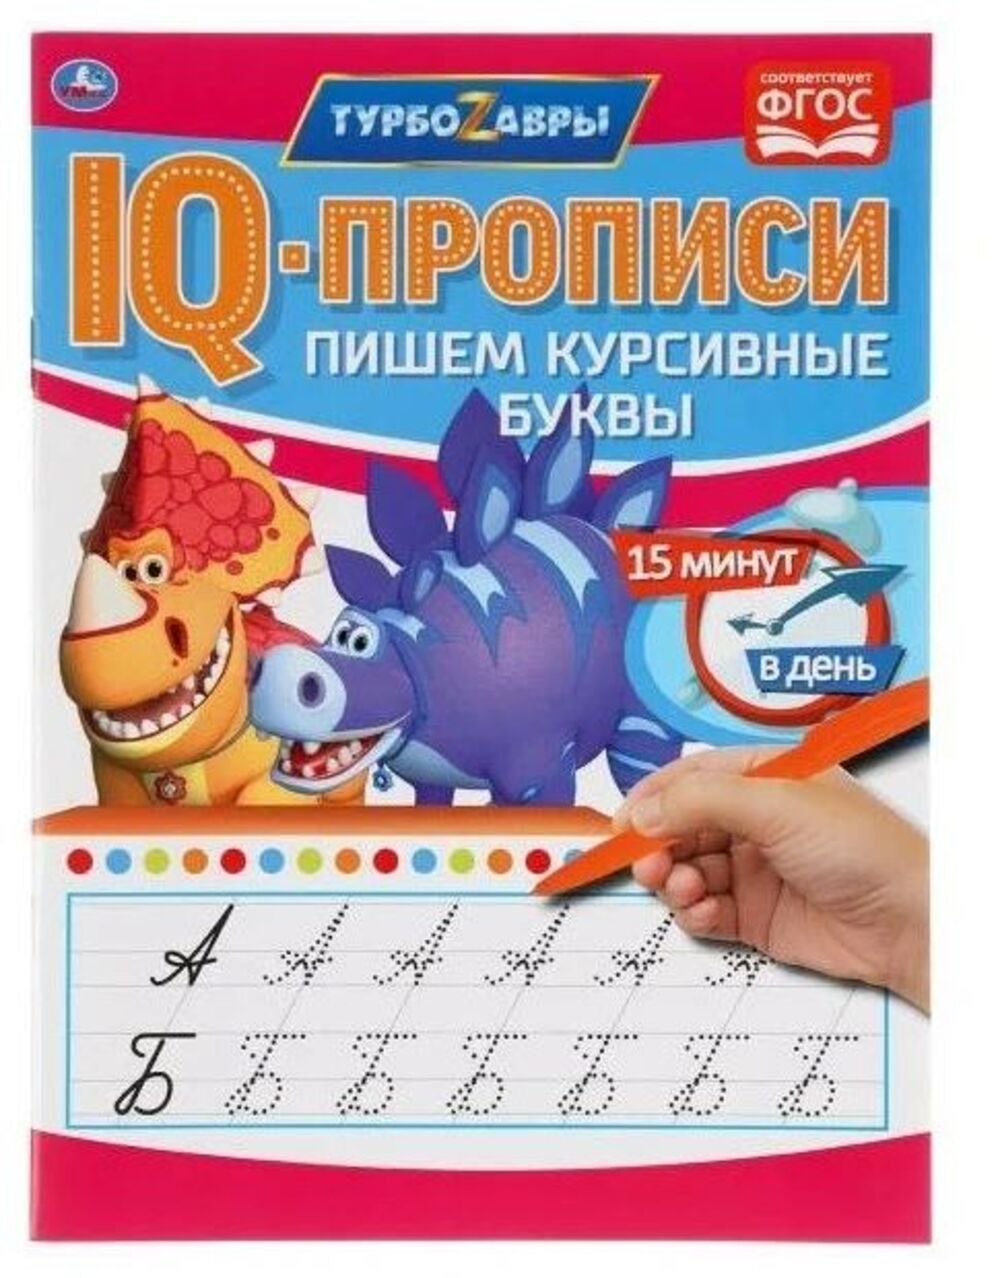 Тетрадь предметная Умка Турбозавры русский язык 16 листов 1 шт